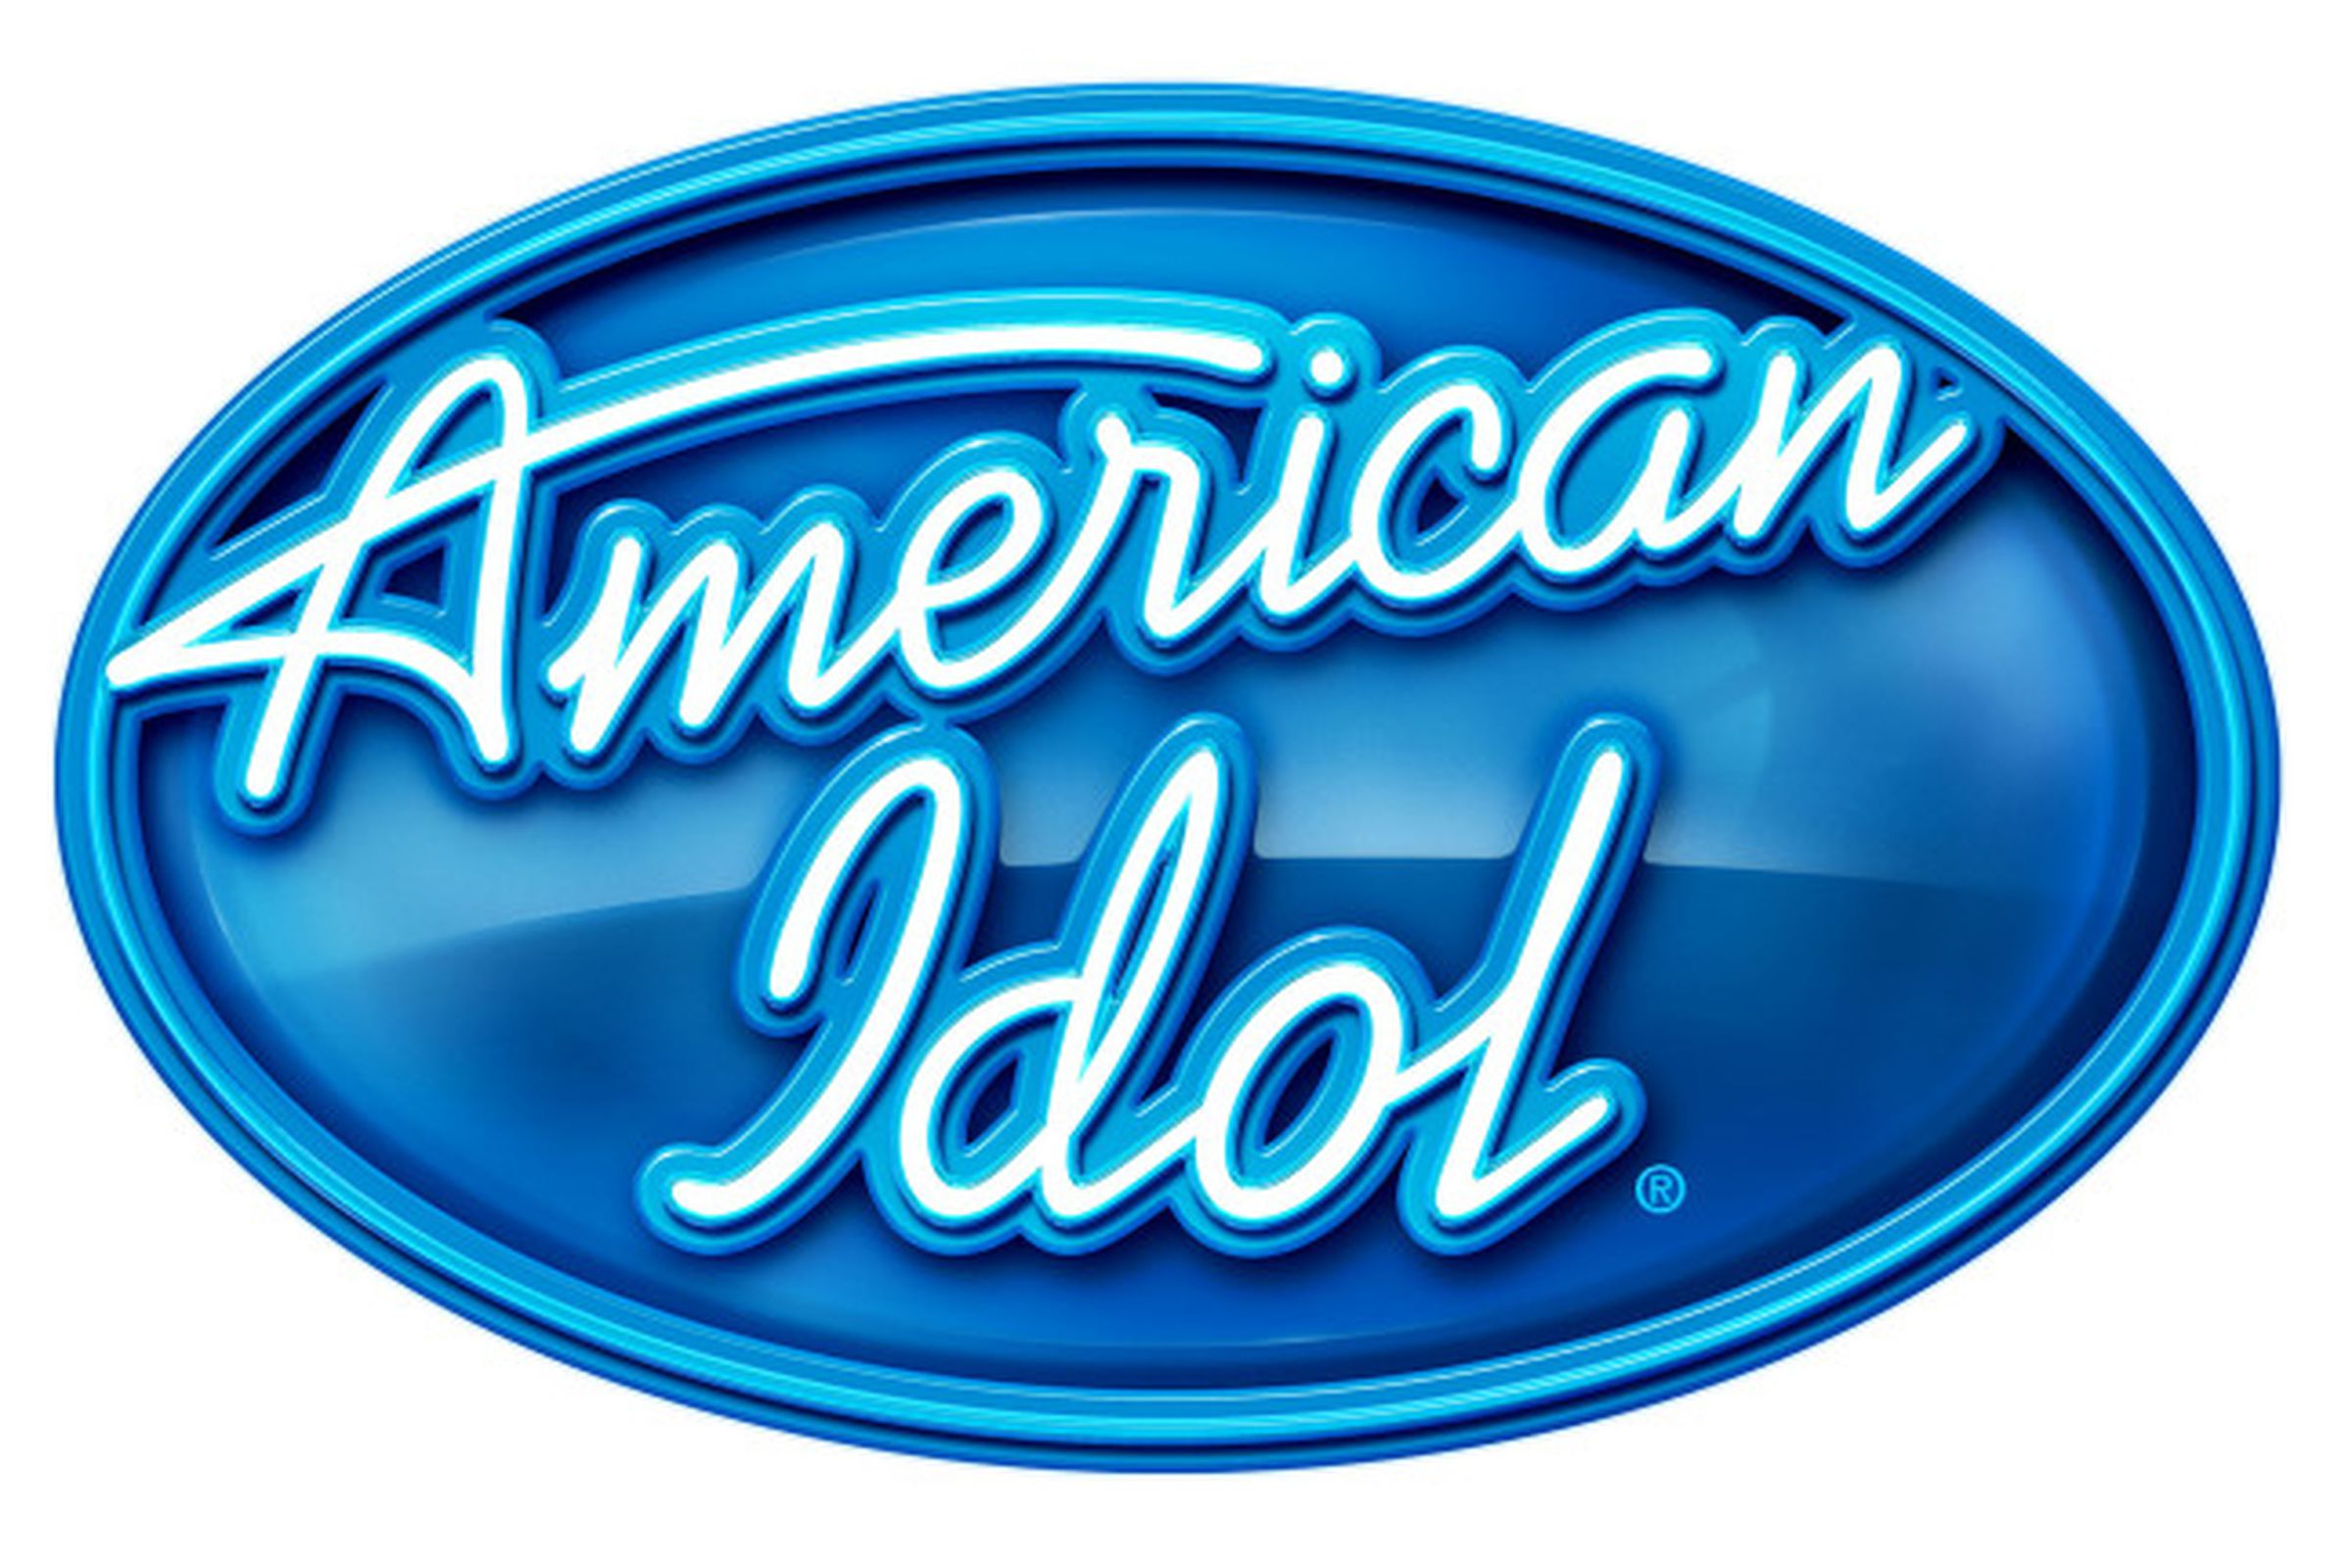 idol logo